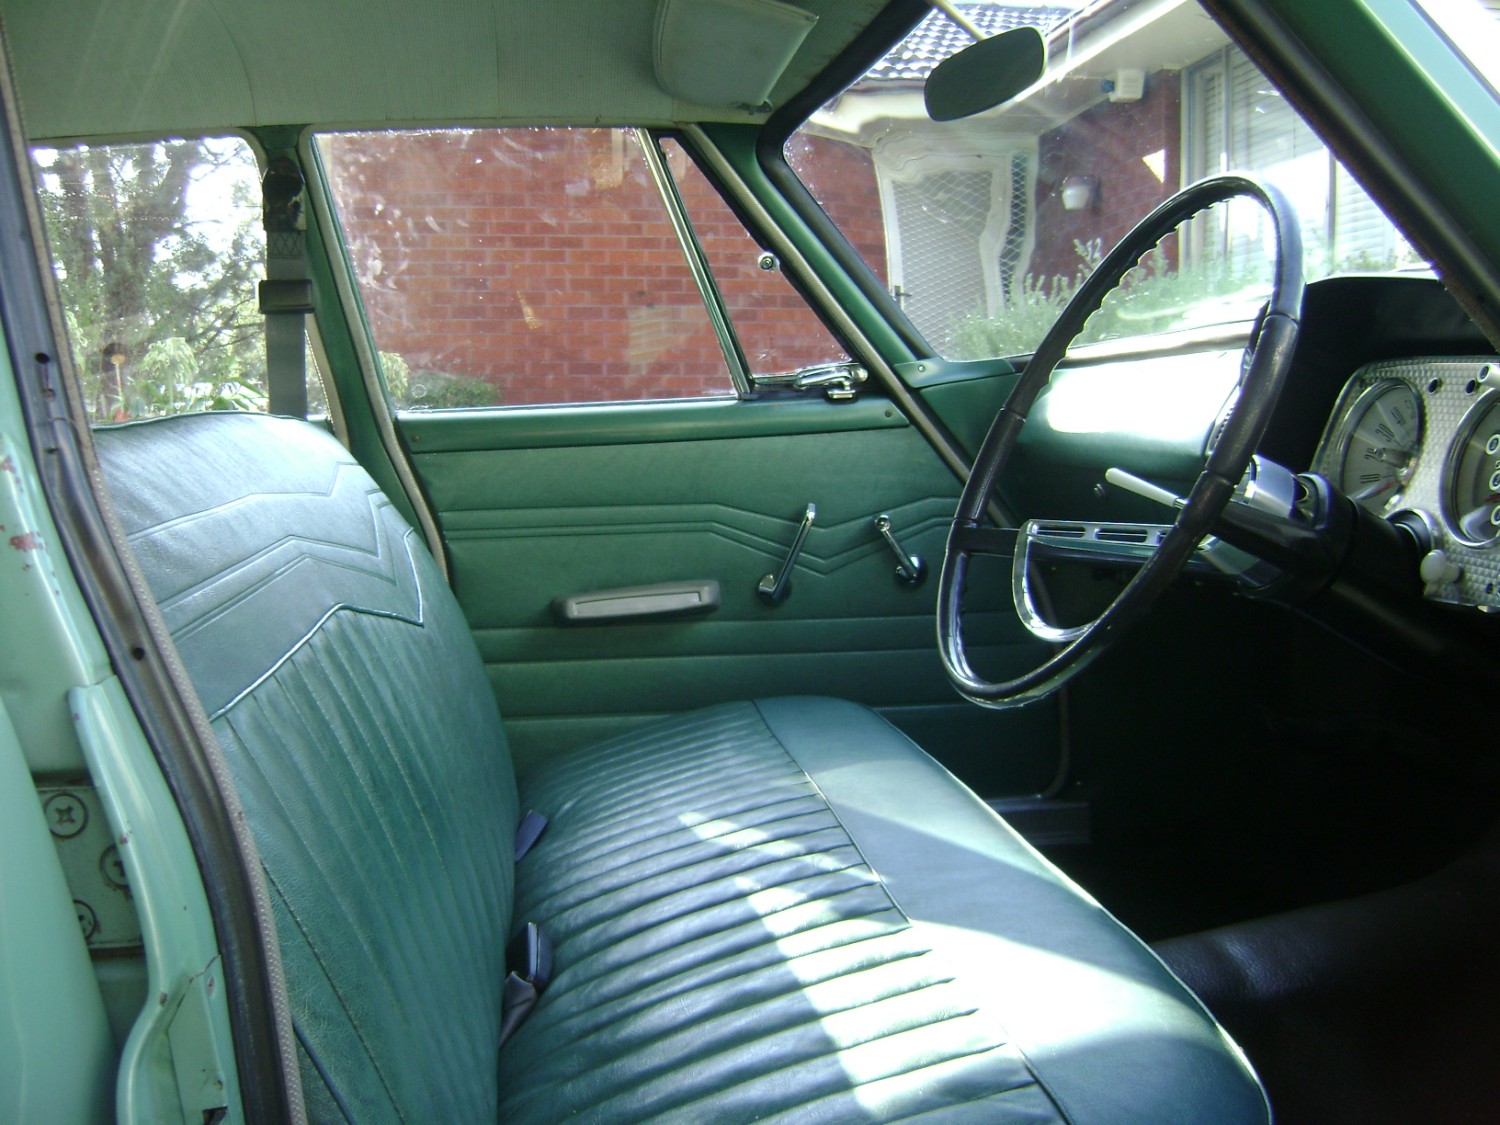 1962 Chrysler valiant r series